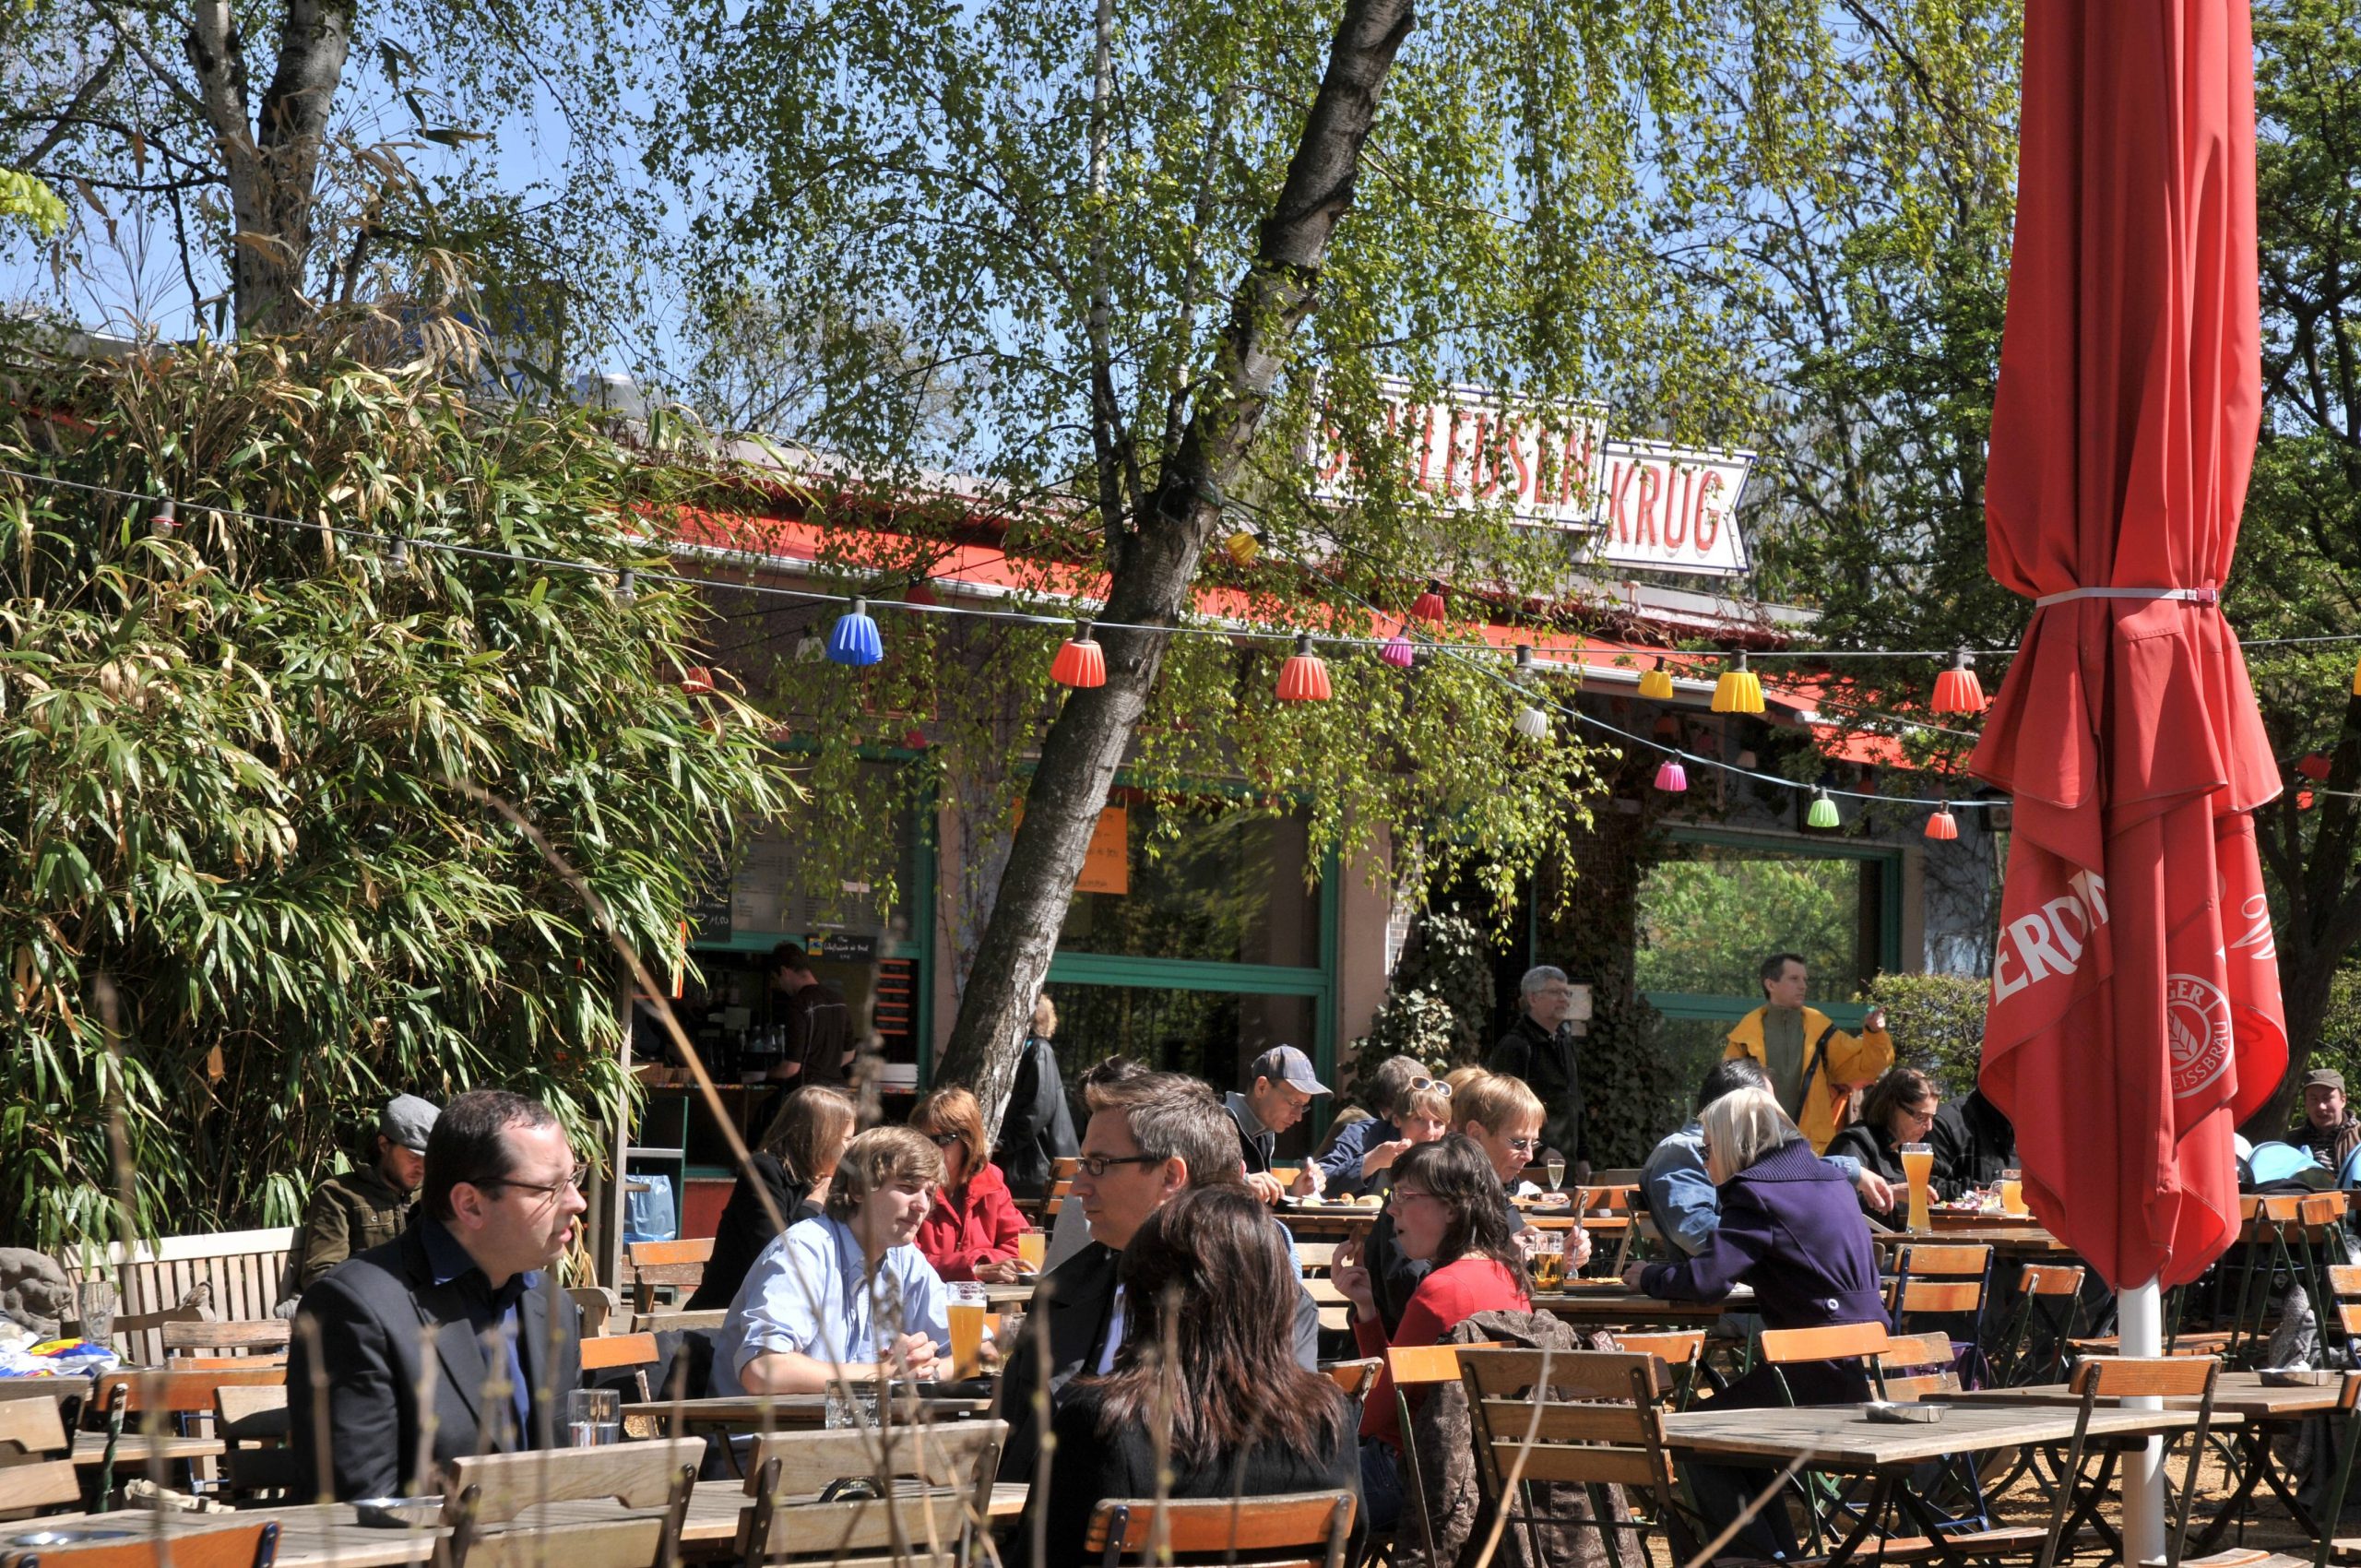 Schöne Biergärten in Berlin hier gibt es kühle Getränke